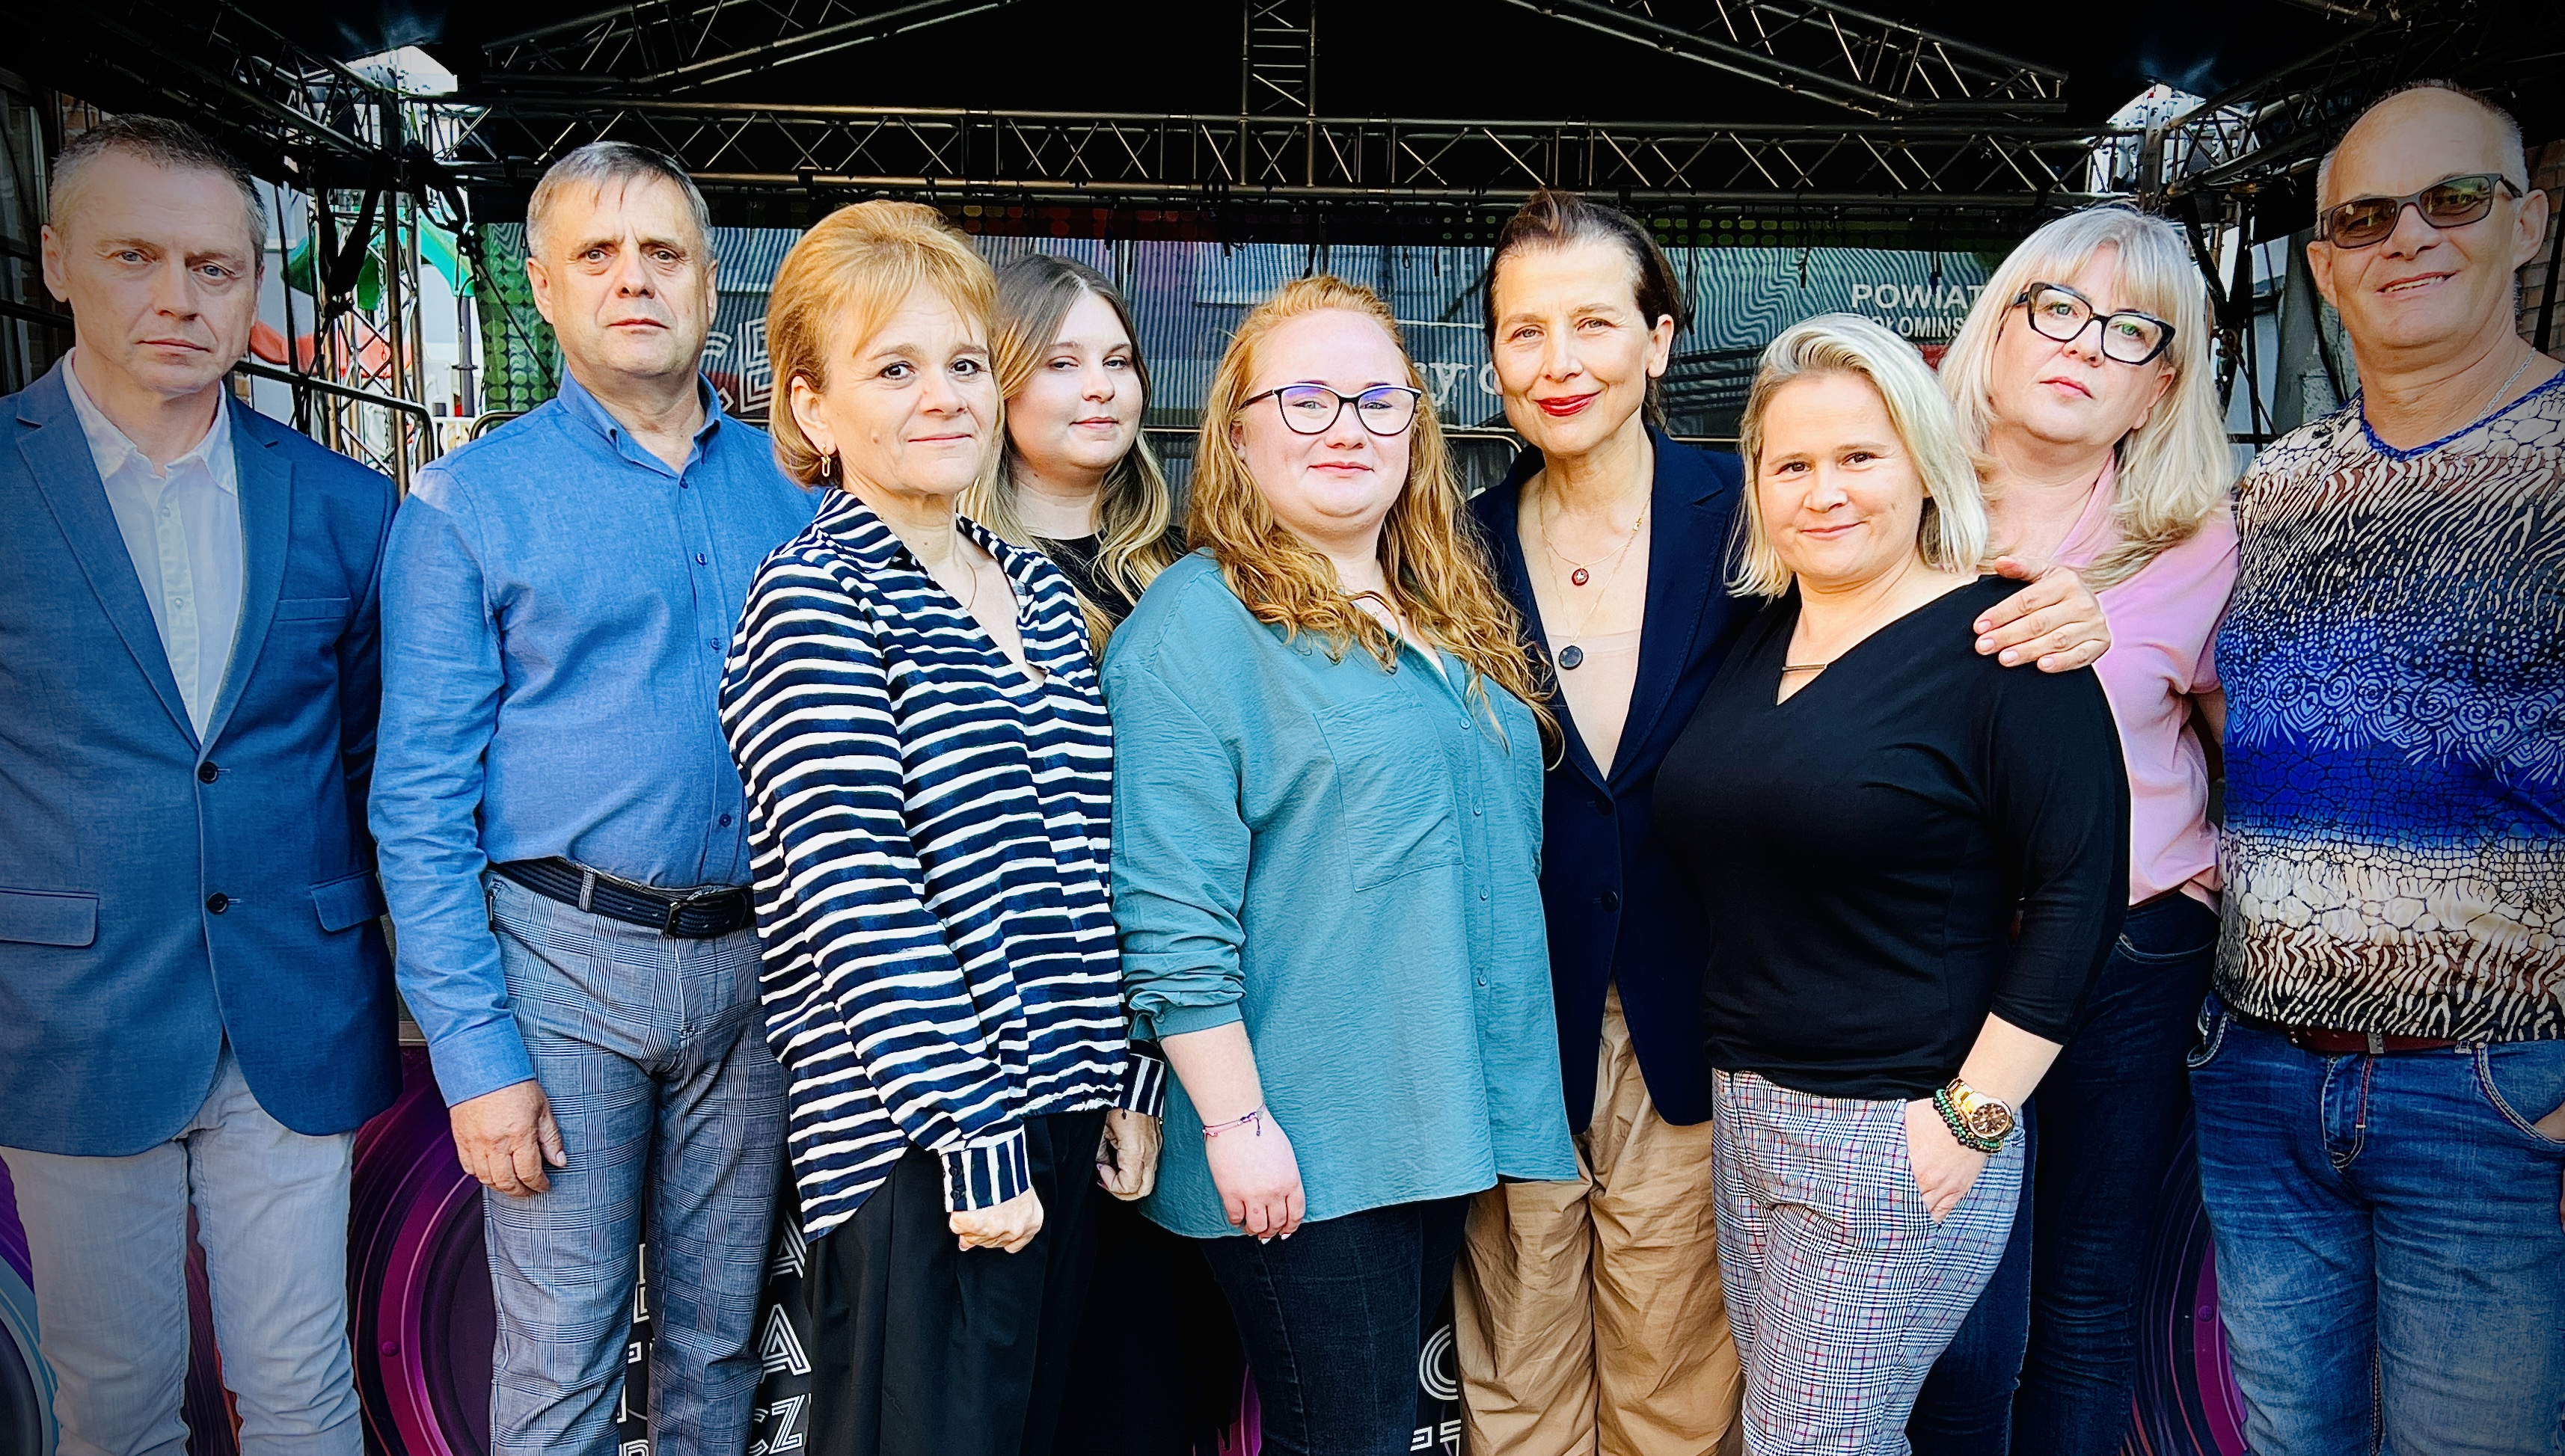 WOŁOMIN. Aktorka Katarzyna Herman ambasadorką kampanii poświęconej rodzinom zastępczym!